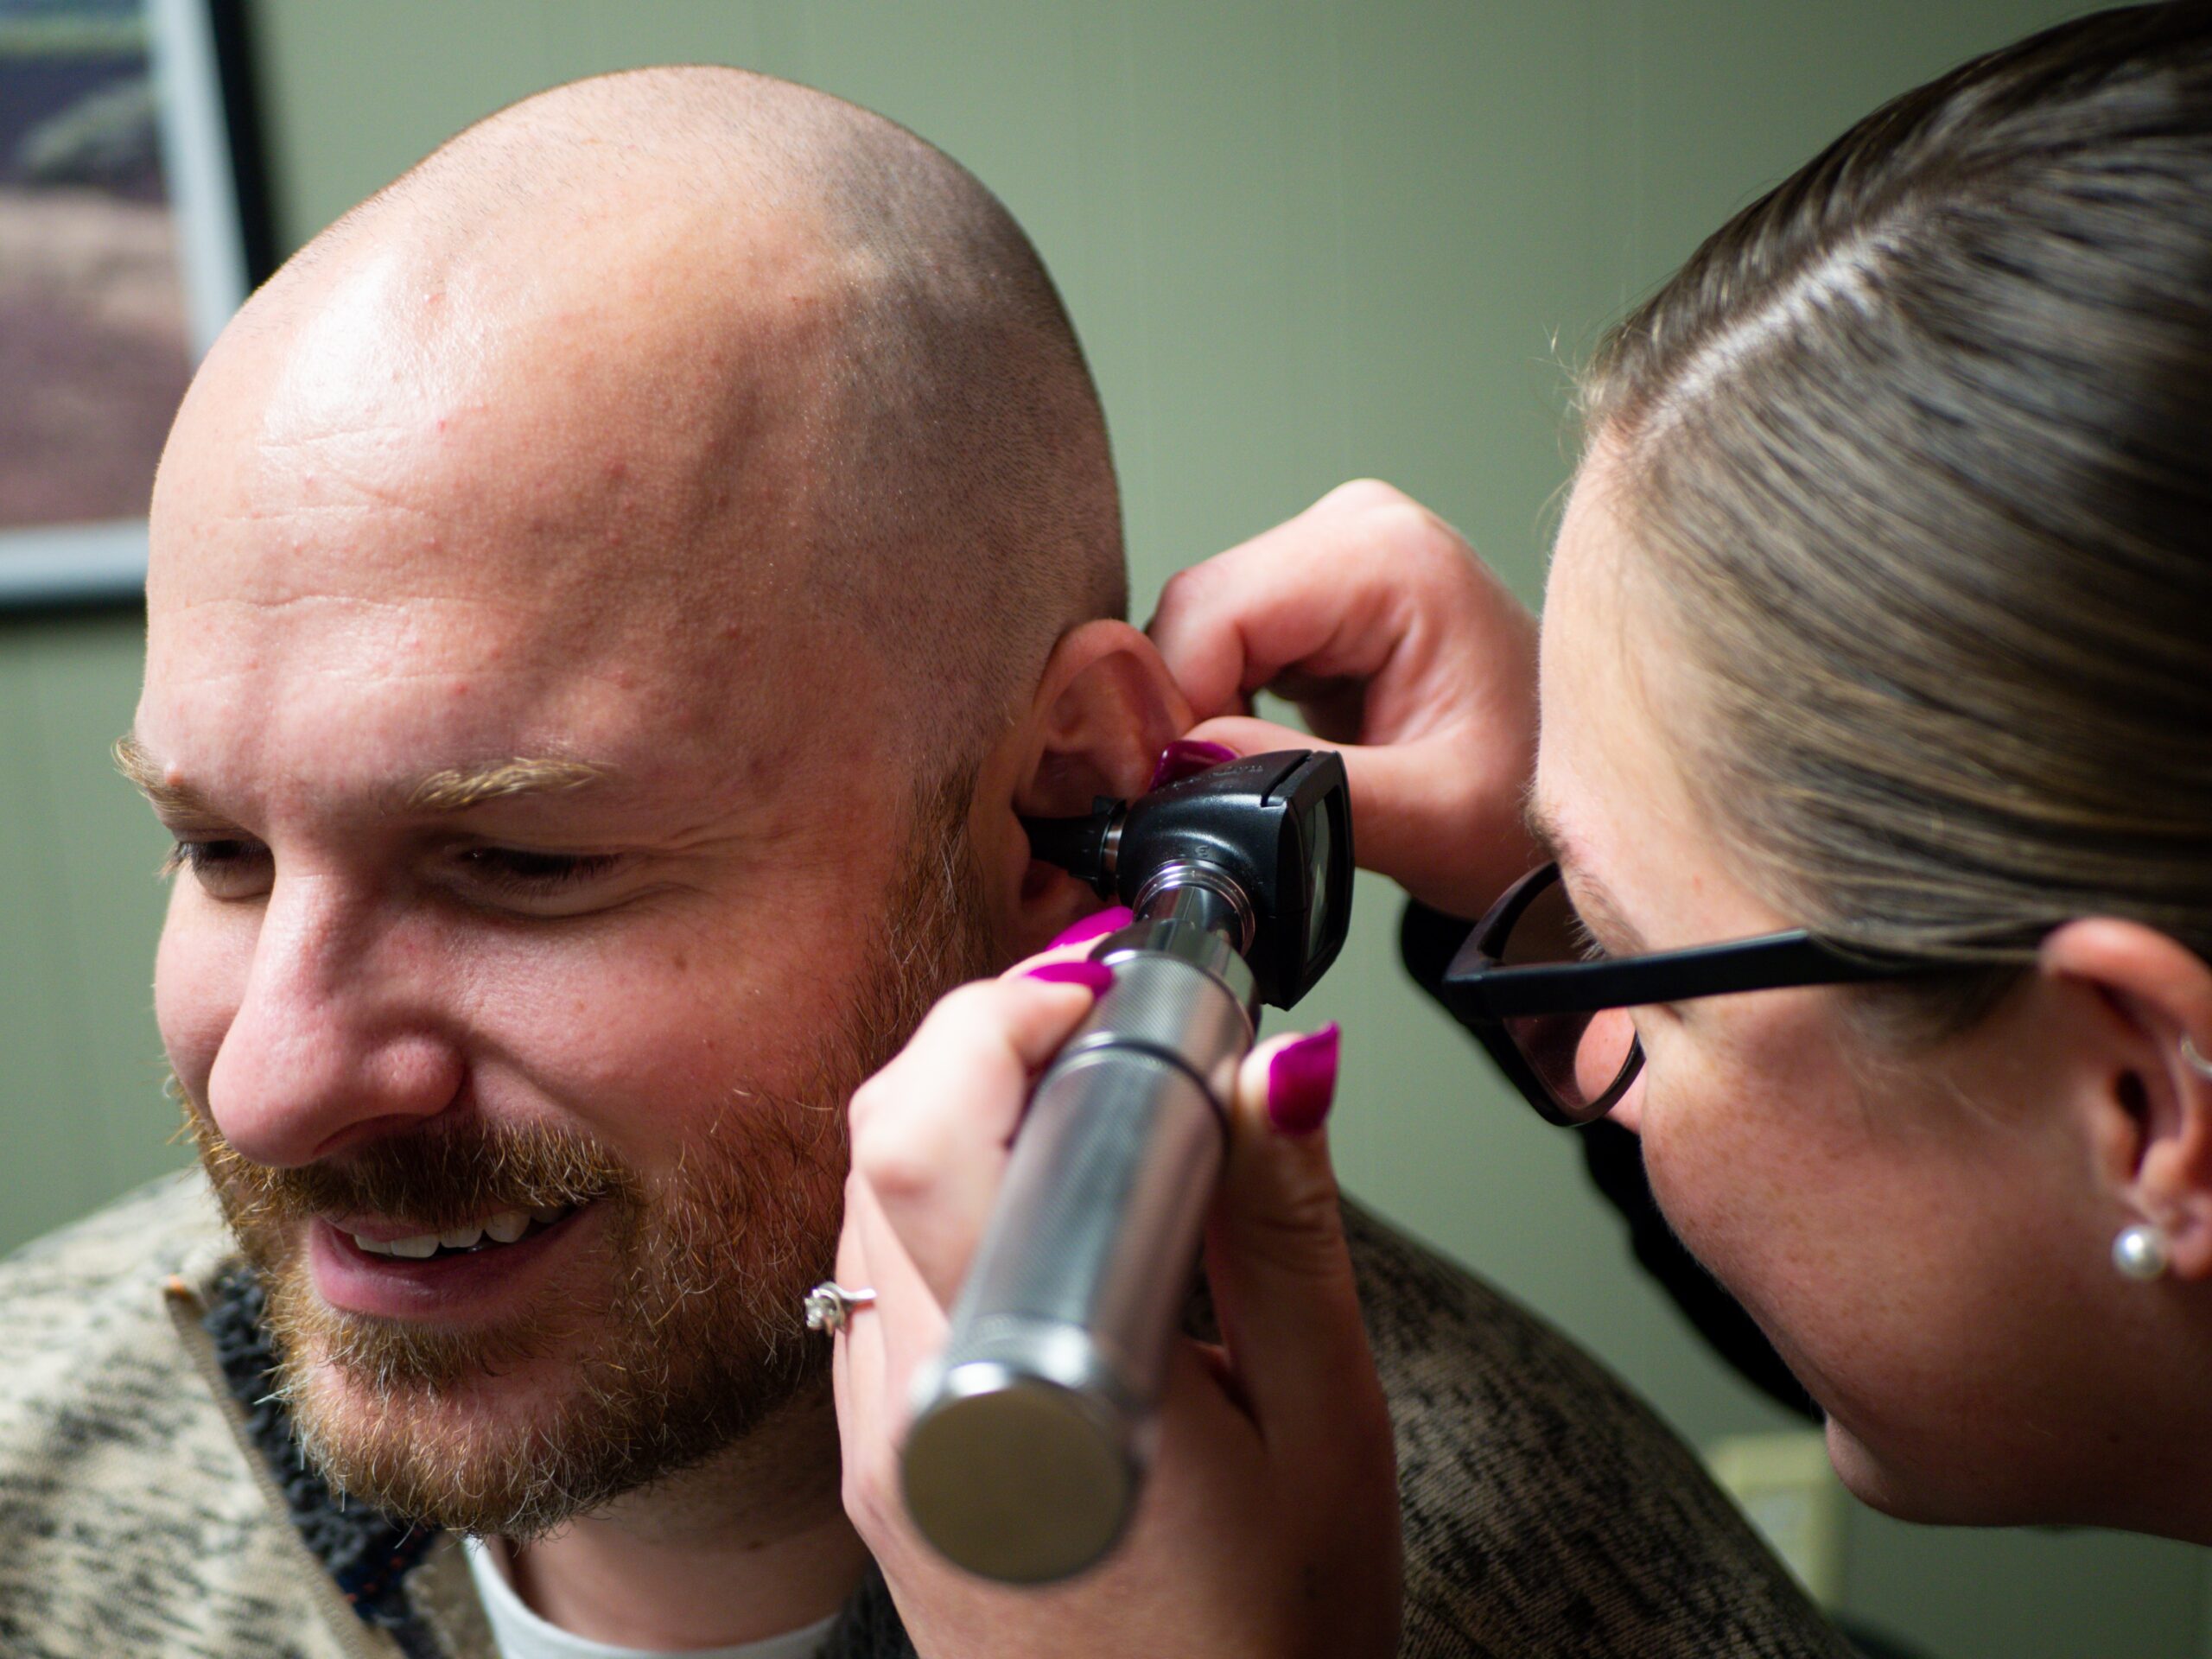 Akustičarka proverava da li su ušni kanali pacijenta čisti da bi bezbedno obavila audiometriju